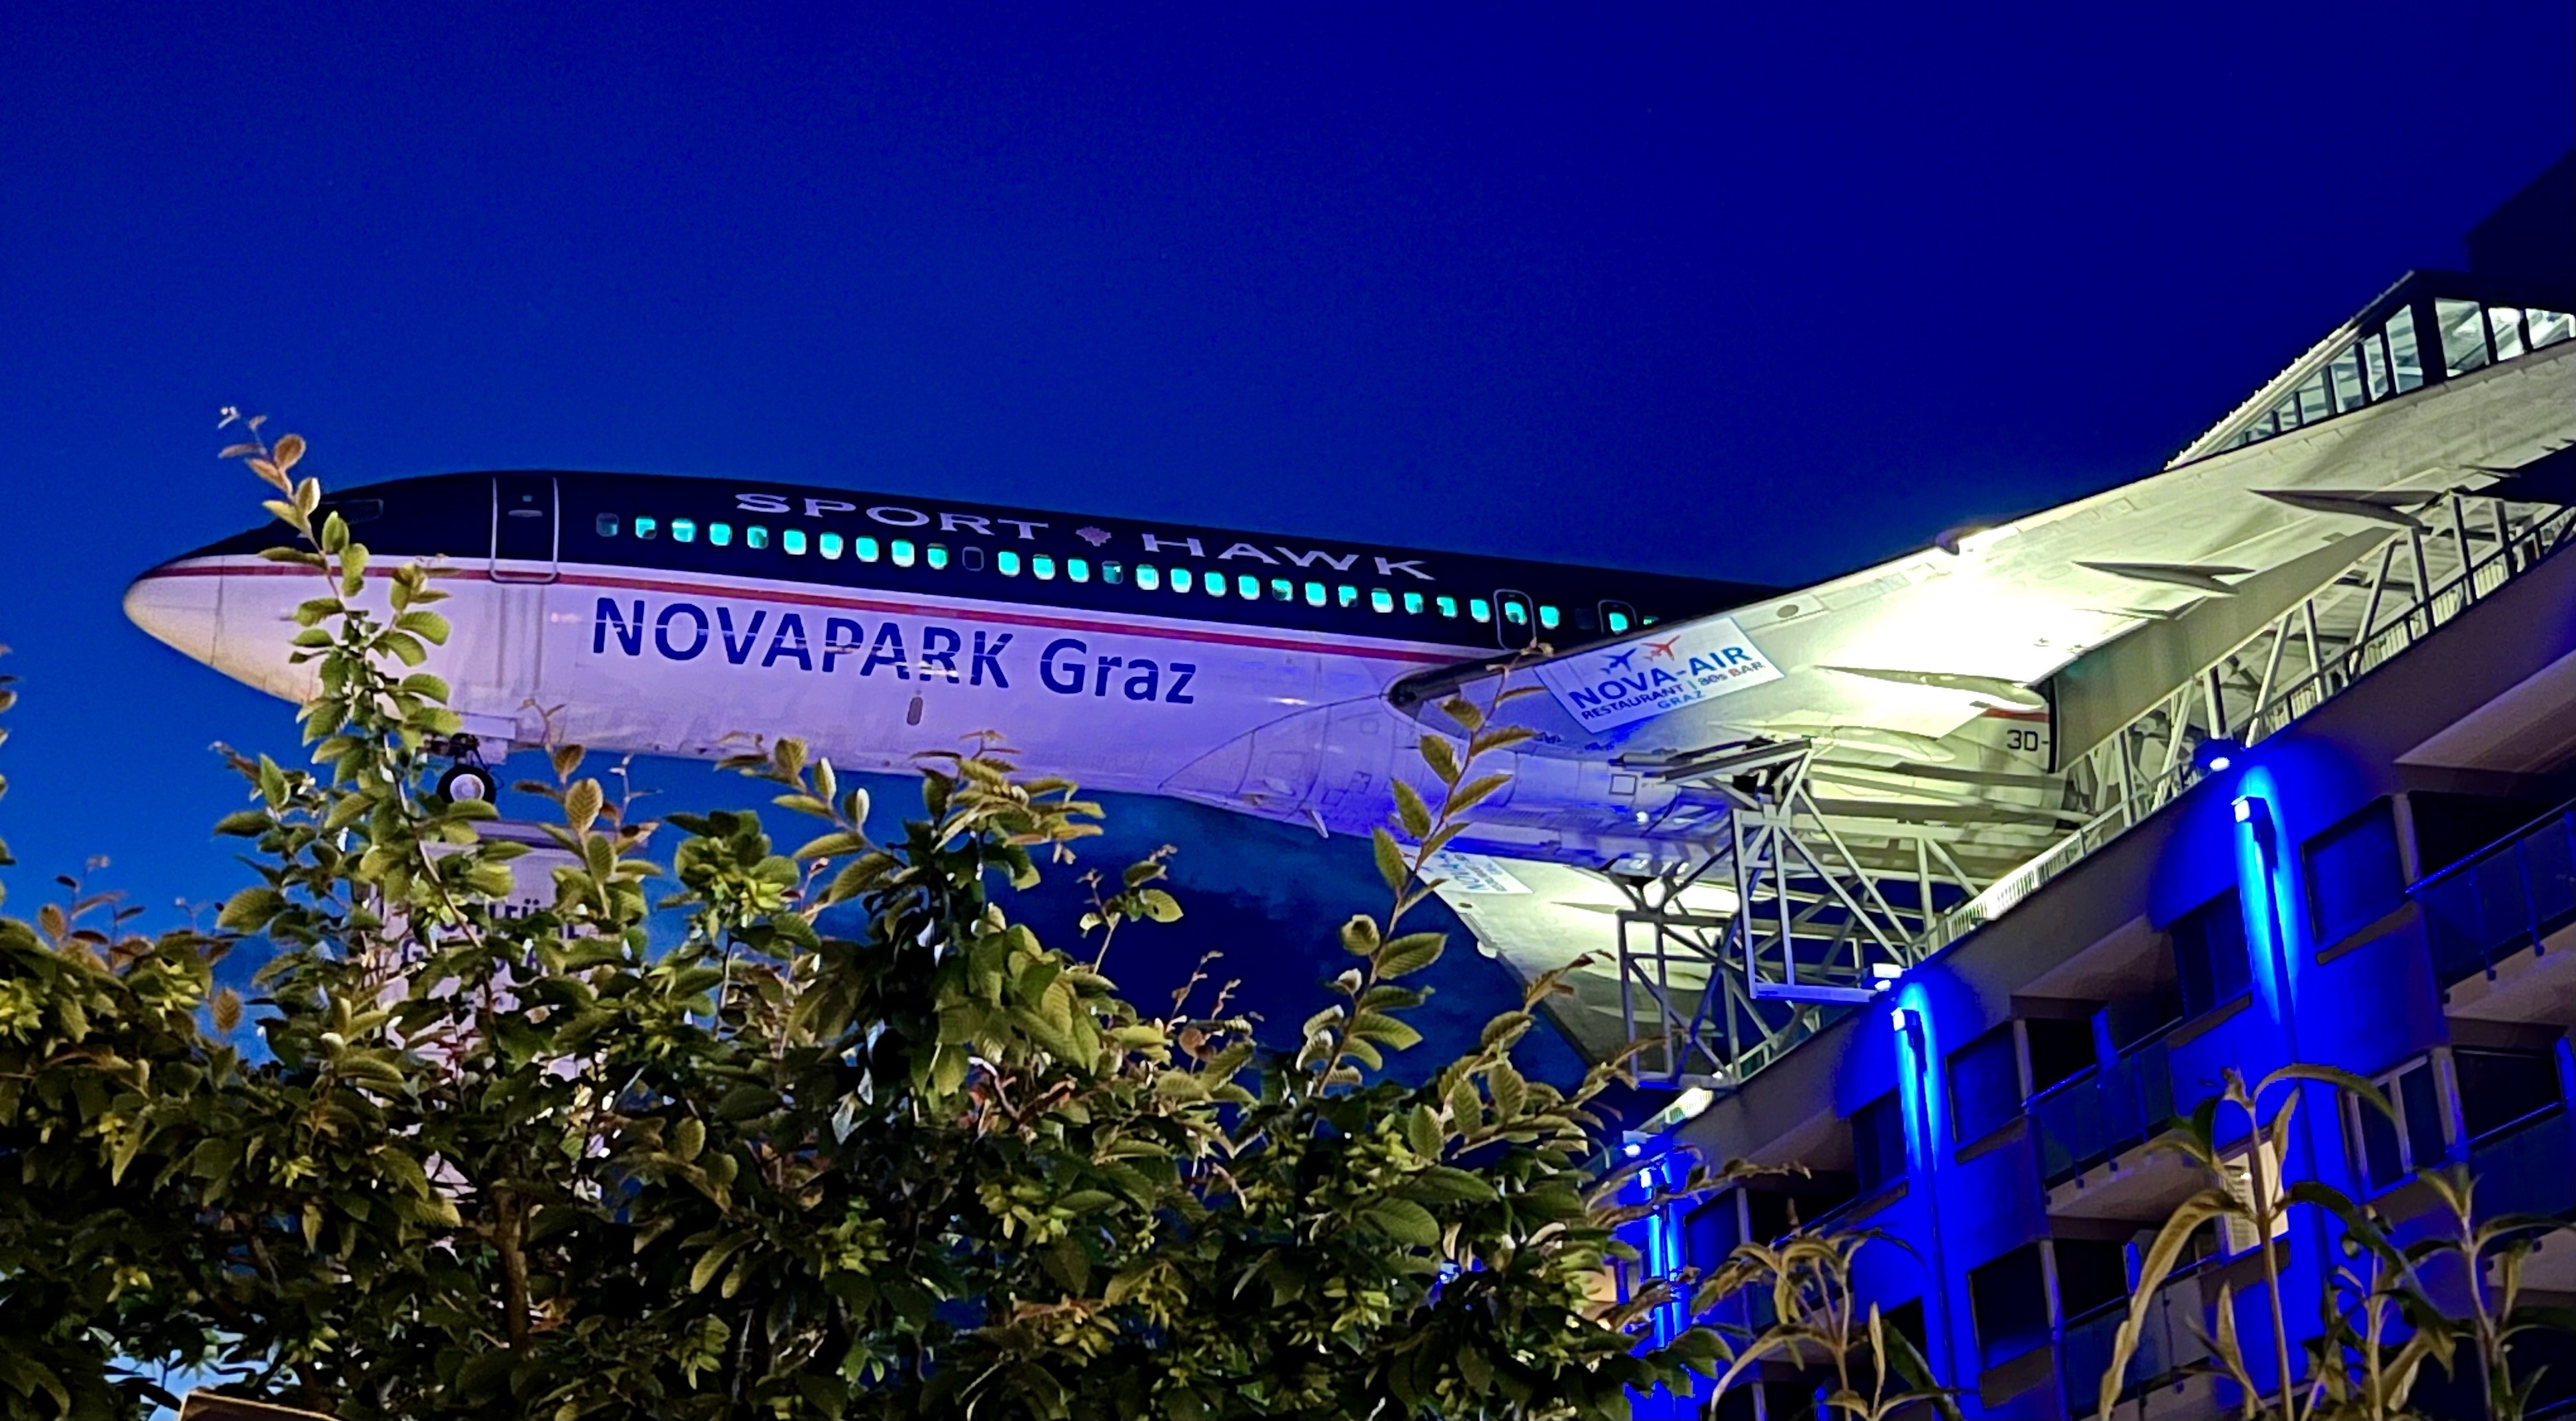 Ein Passagierflugzeug am Dach eines Gebäudes platziert,   bei Nacht. Im Vordergrund sind Blätter und Zweige von Bäumen zu sehen.